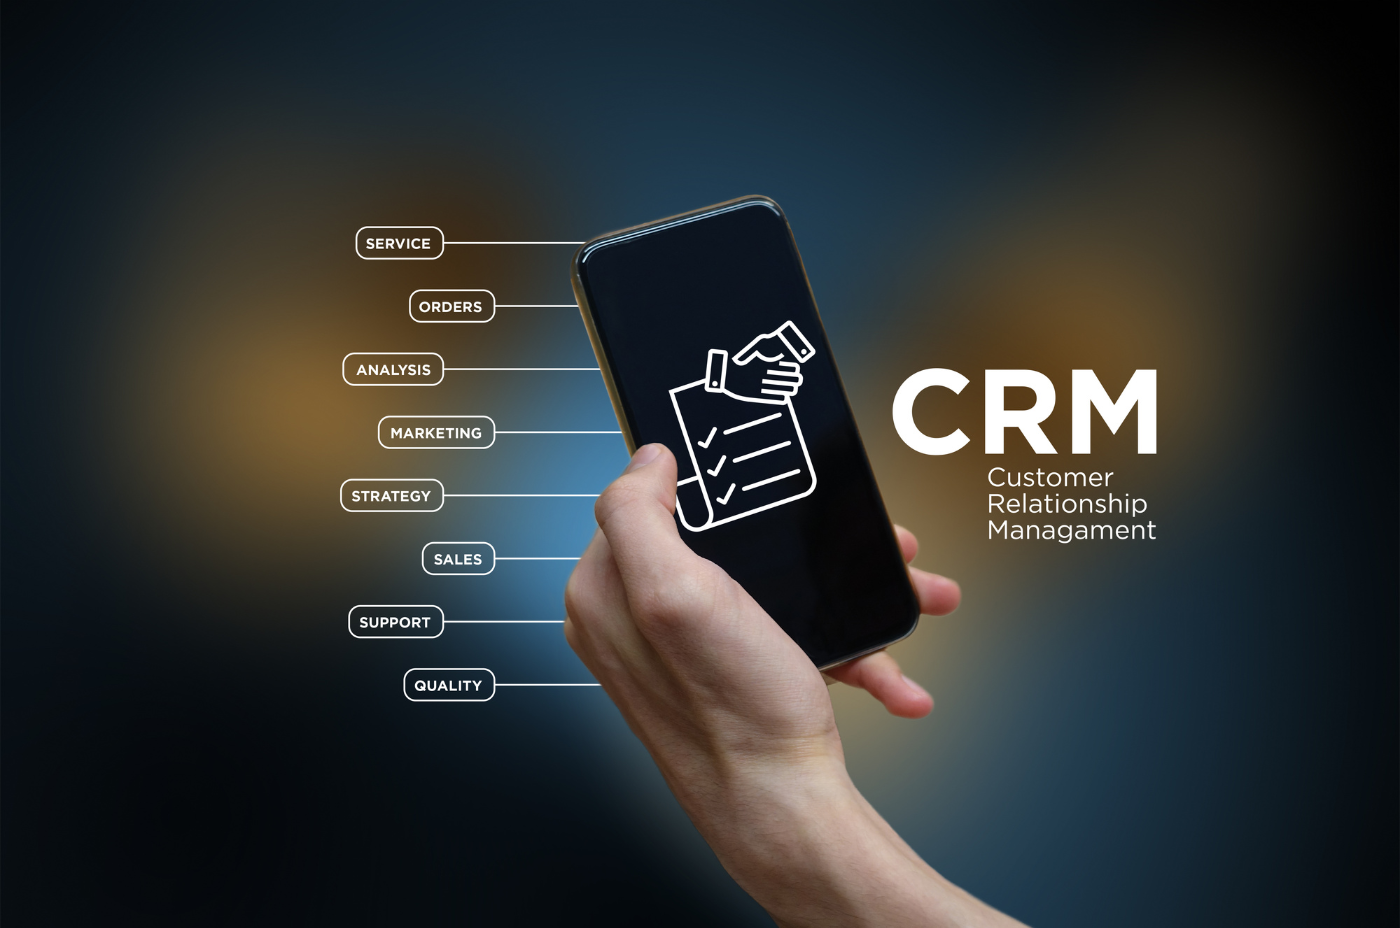 Do zarządzania relacjami z klientami z pewnością przyda się także mobilny CRM.